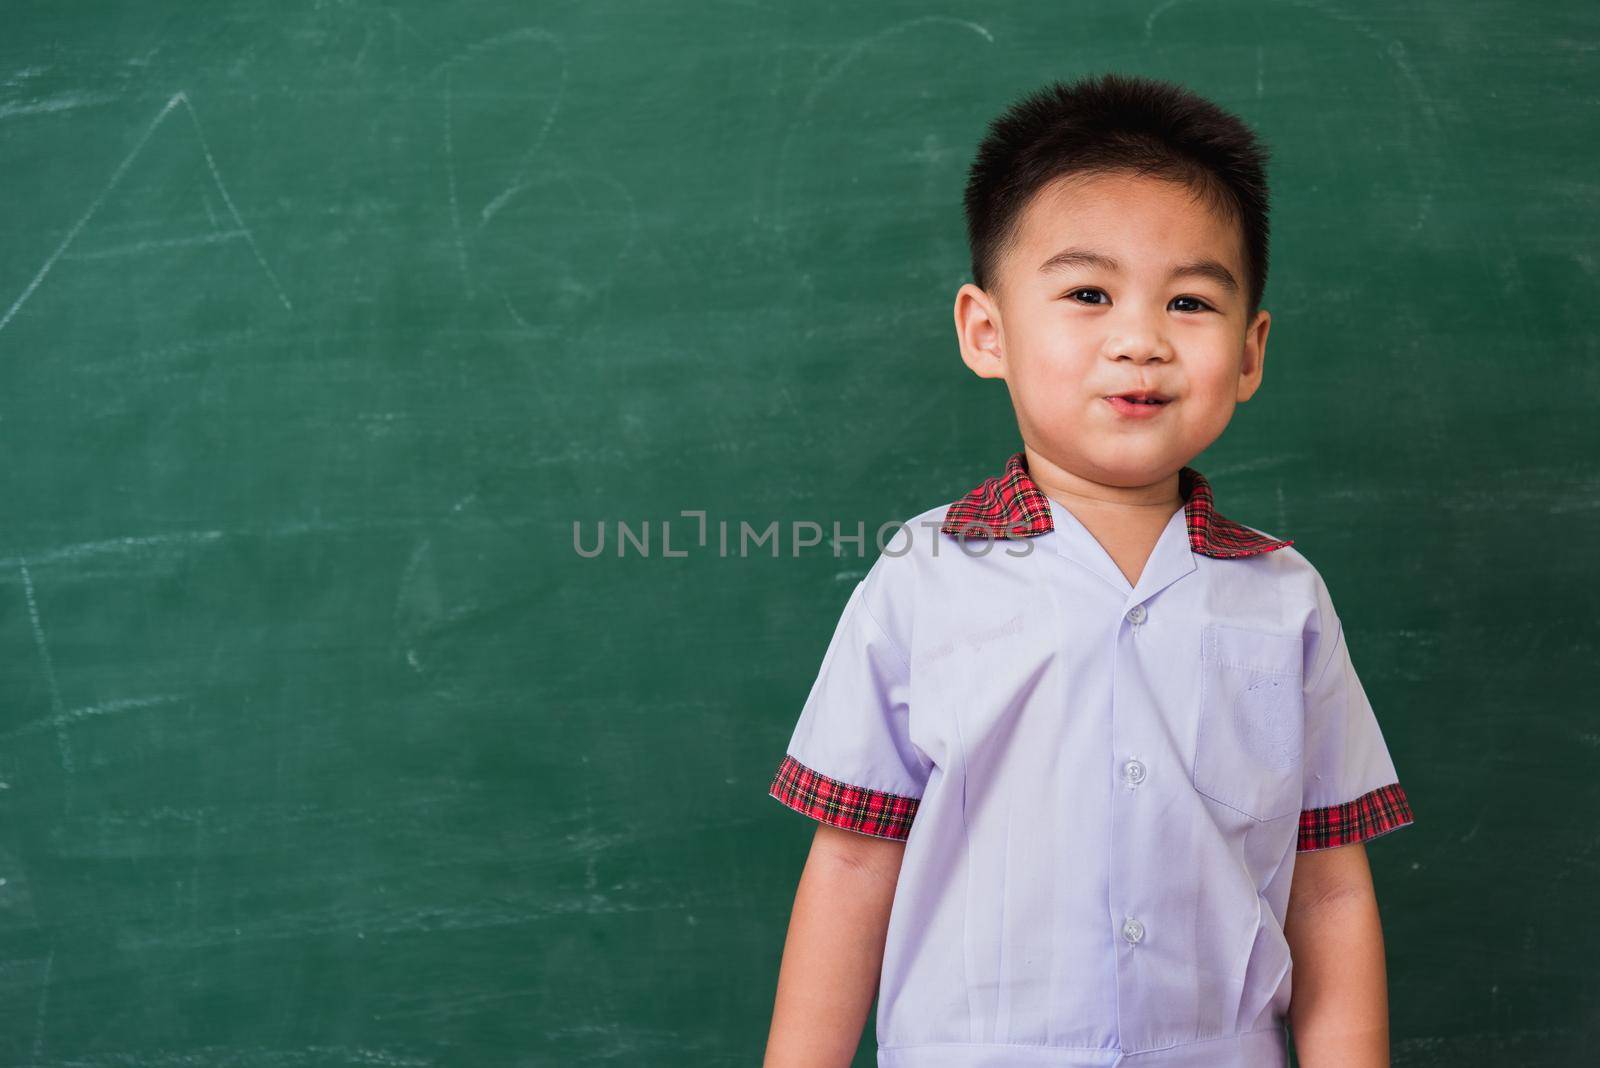 child from kindergarten in student uniform smiling on green school blackboard by Sorapop